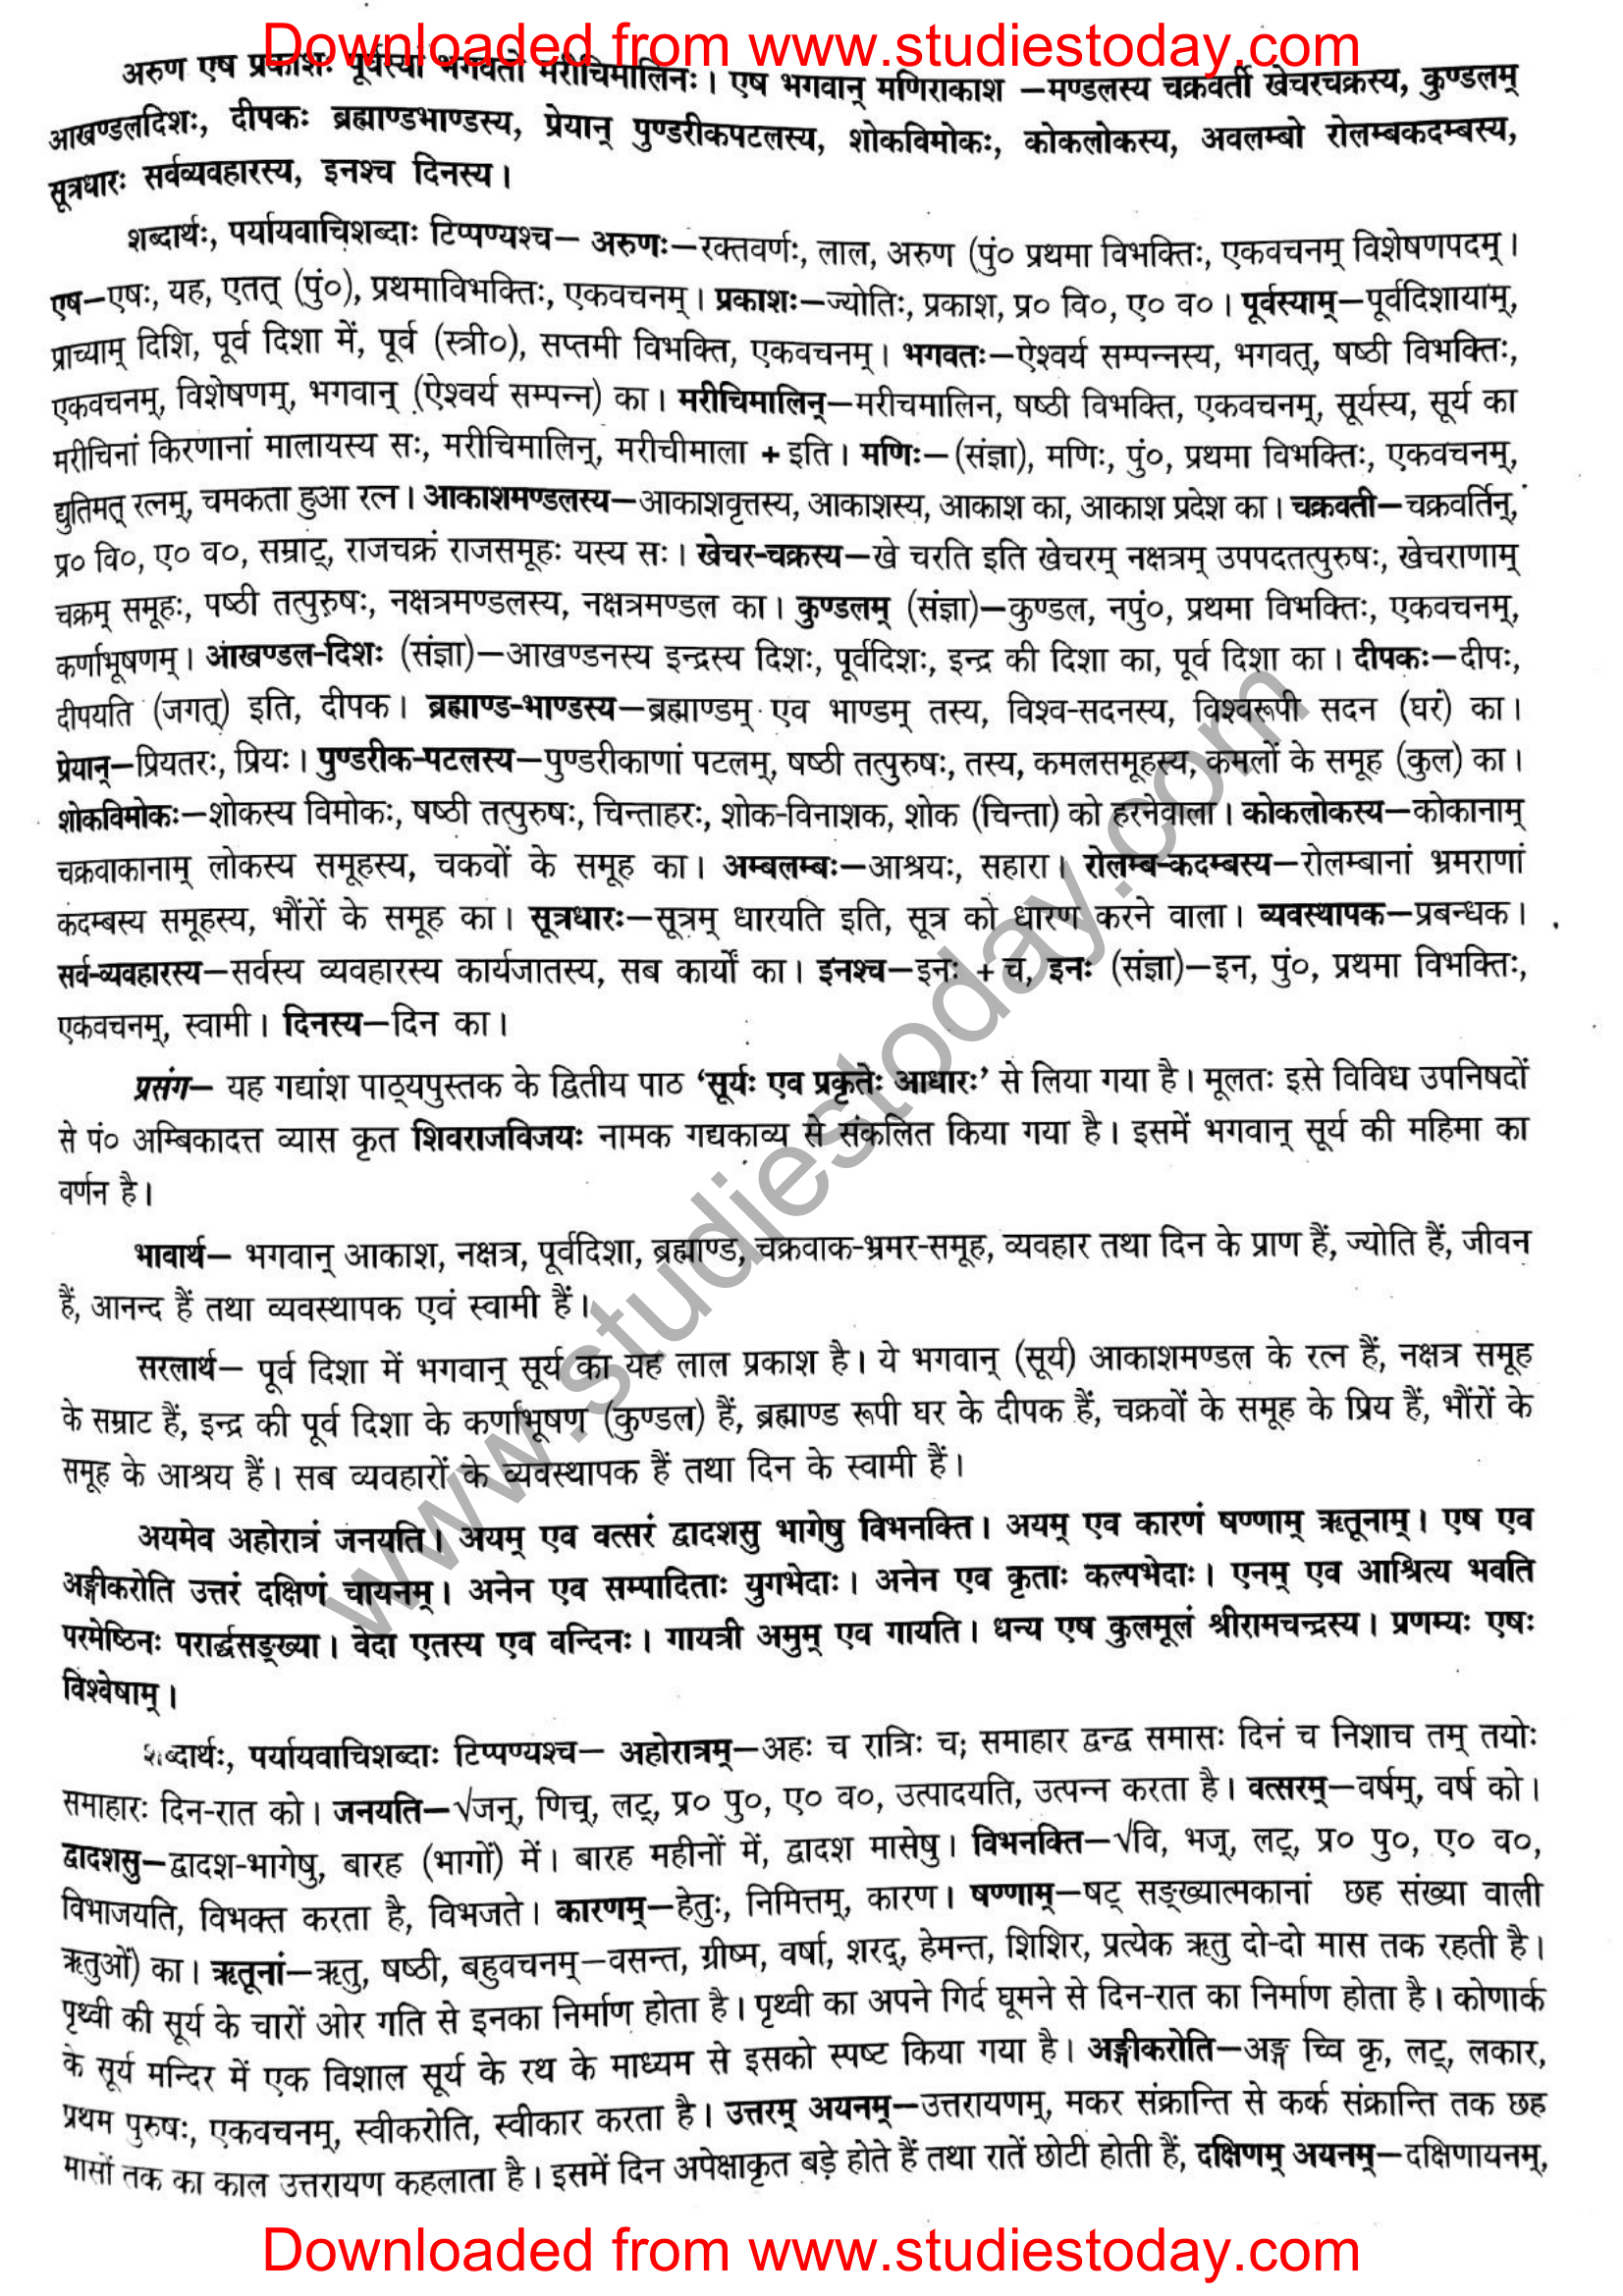 ncert-solutions-class-12-sanskrit-ritikia-chapter-2-02